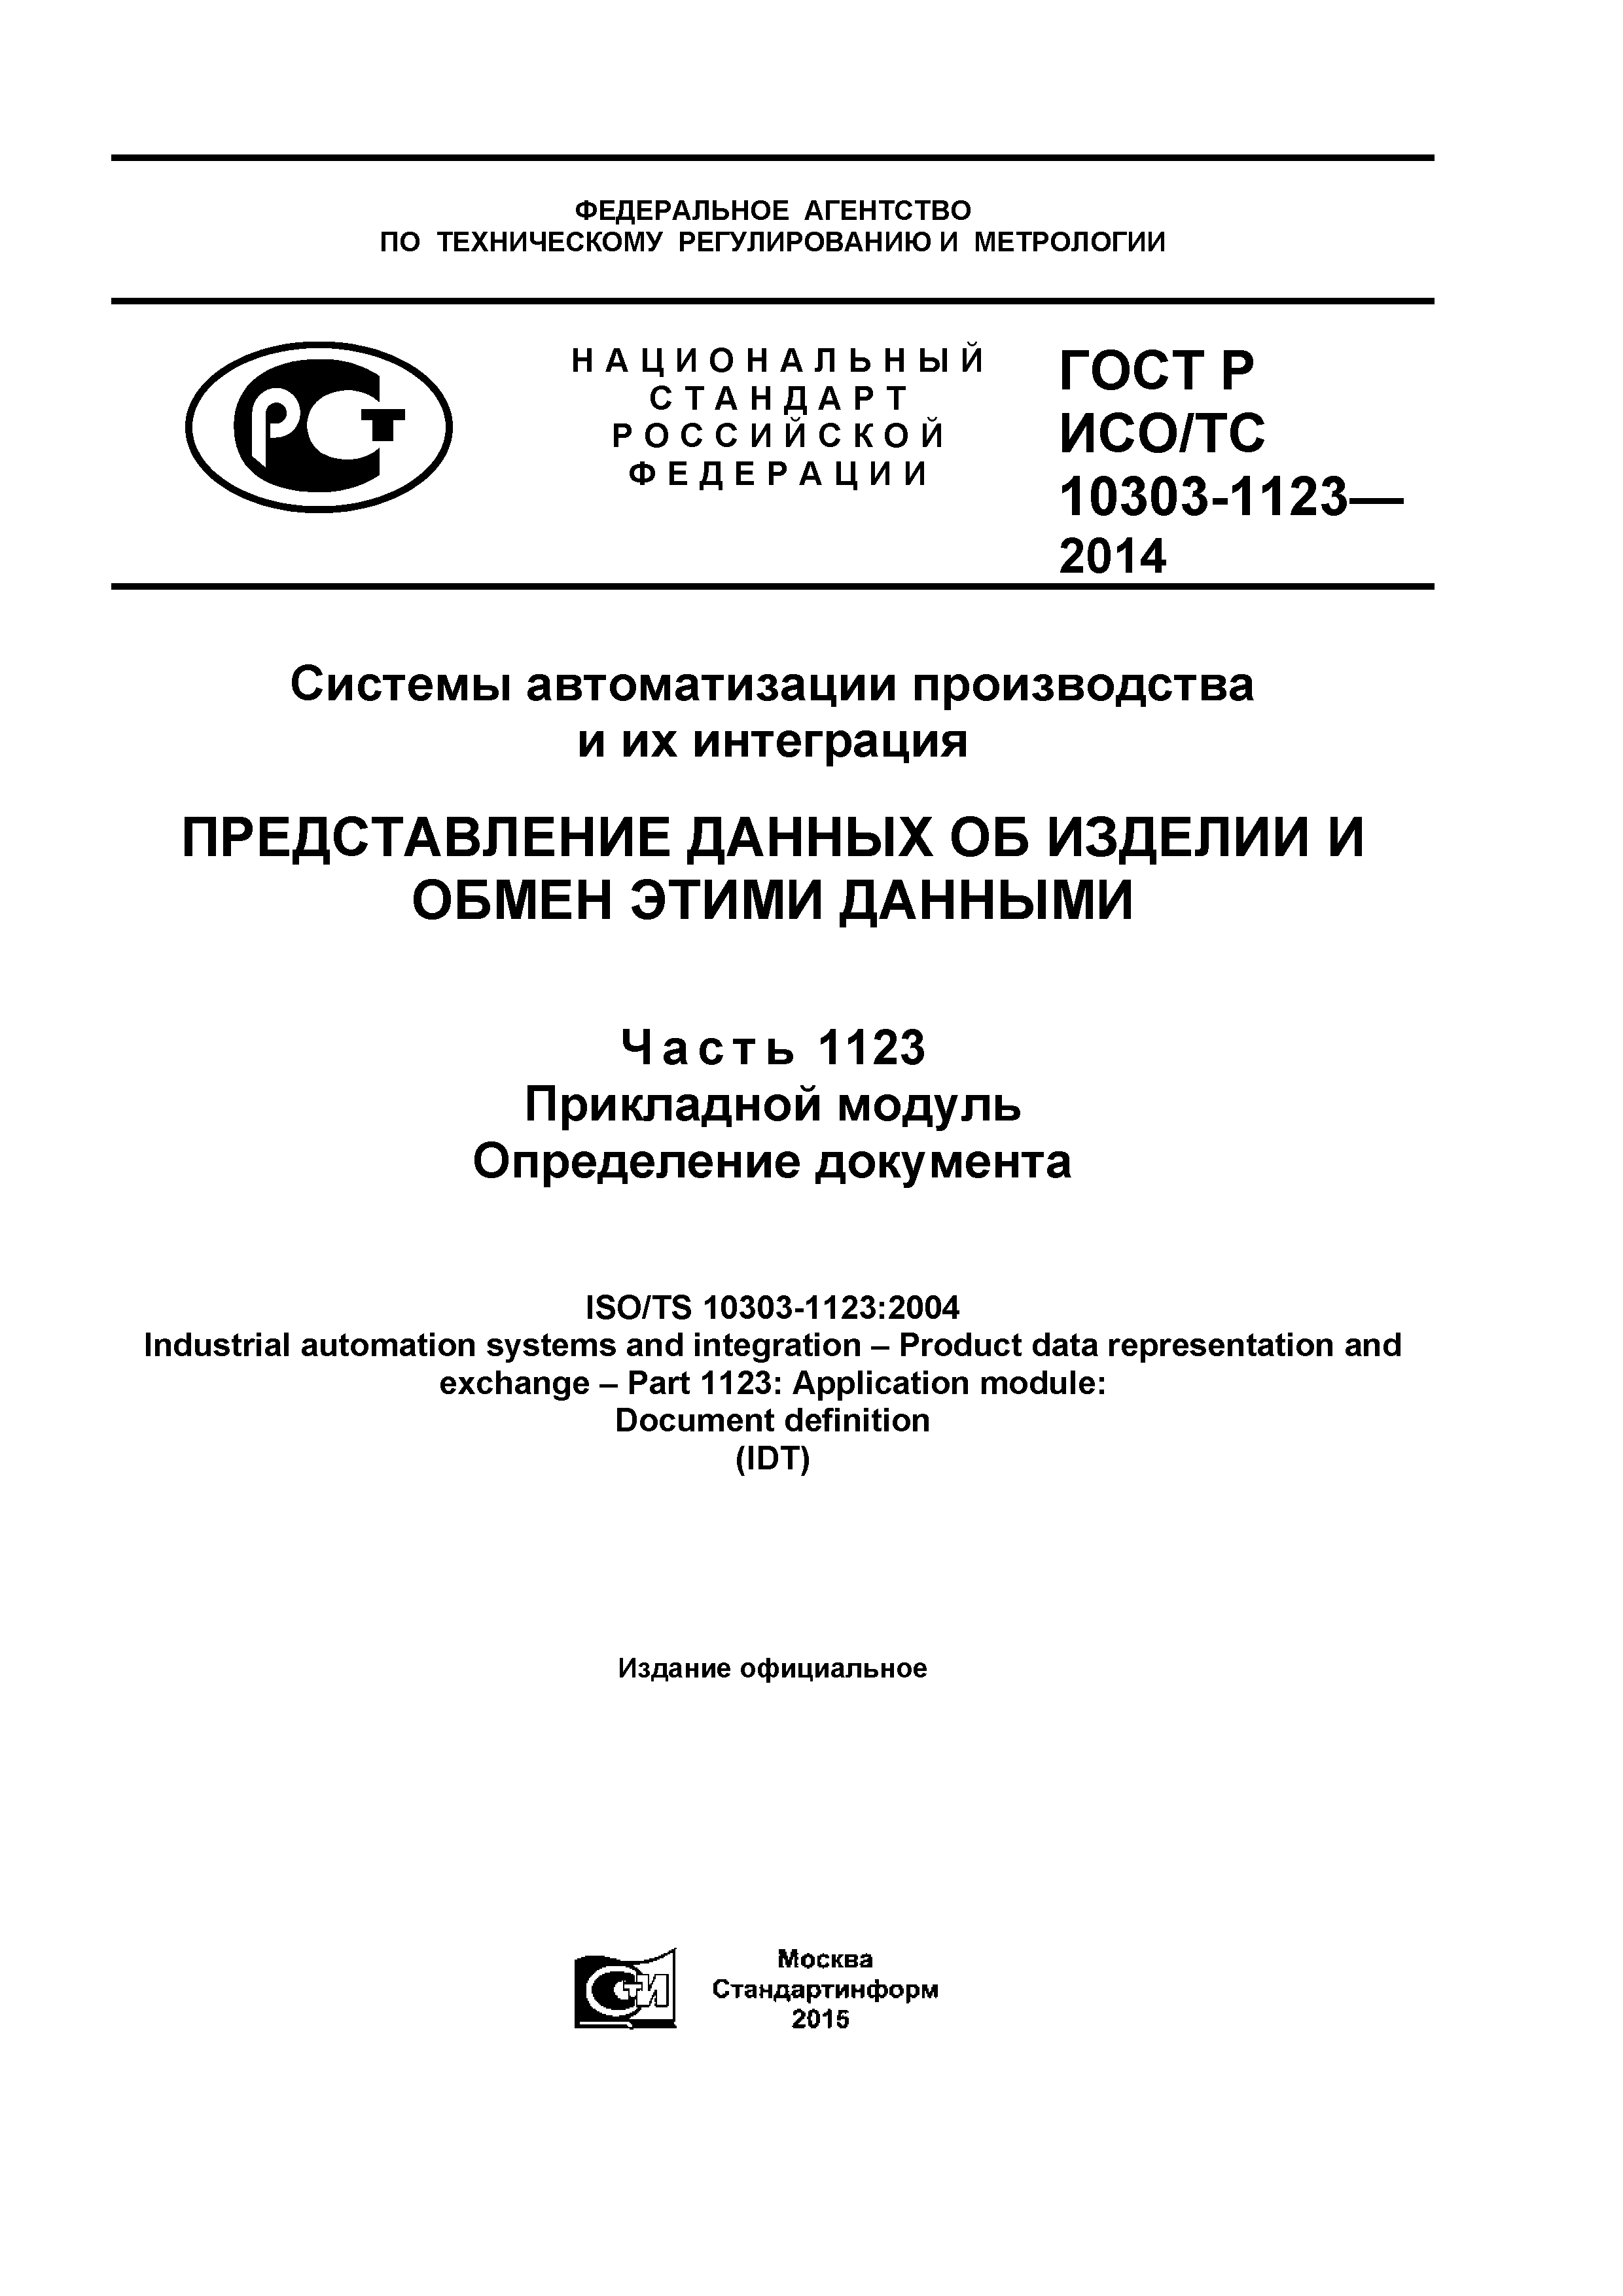 ГОСТ Р ИСО/ТС 10303-1123-2014